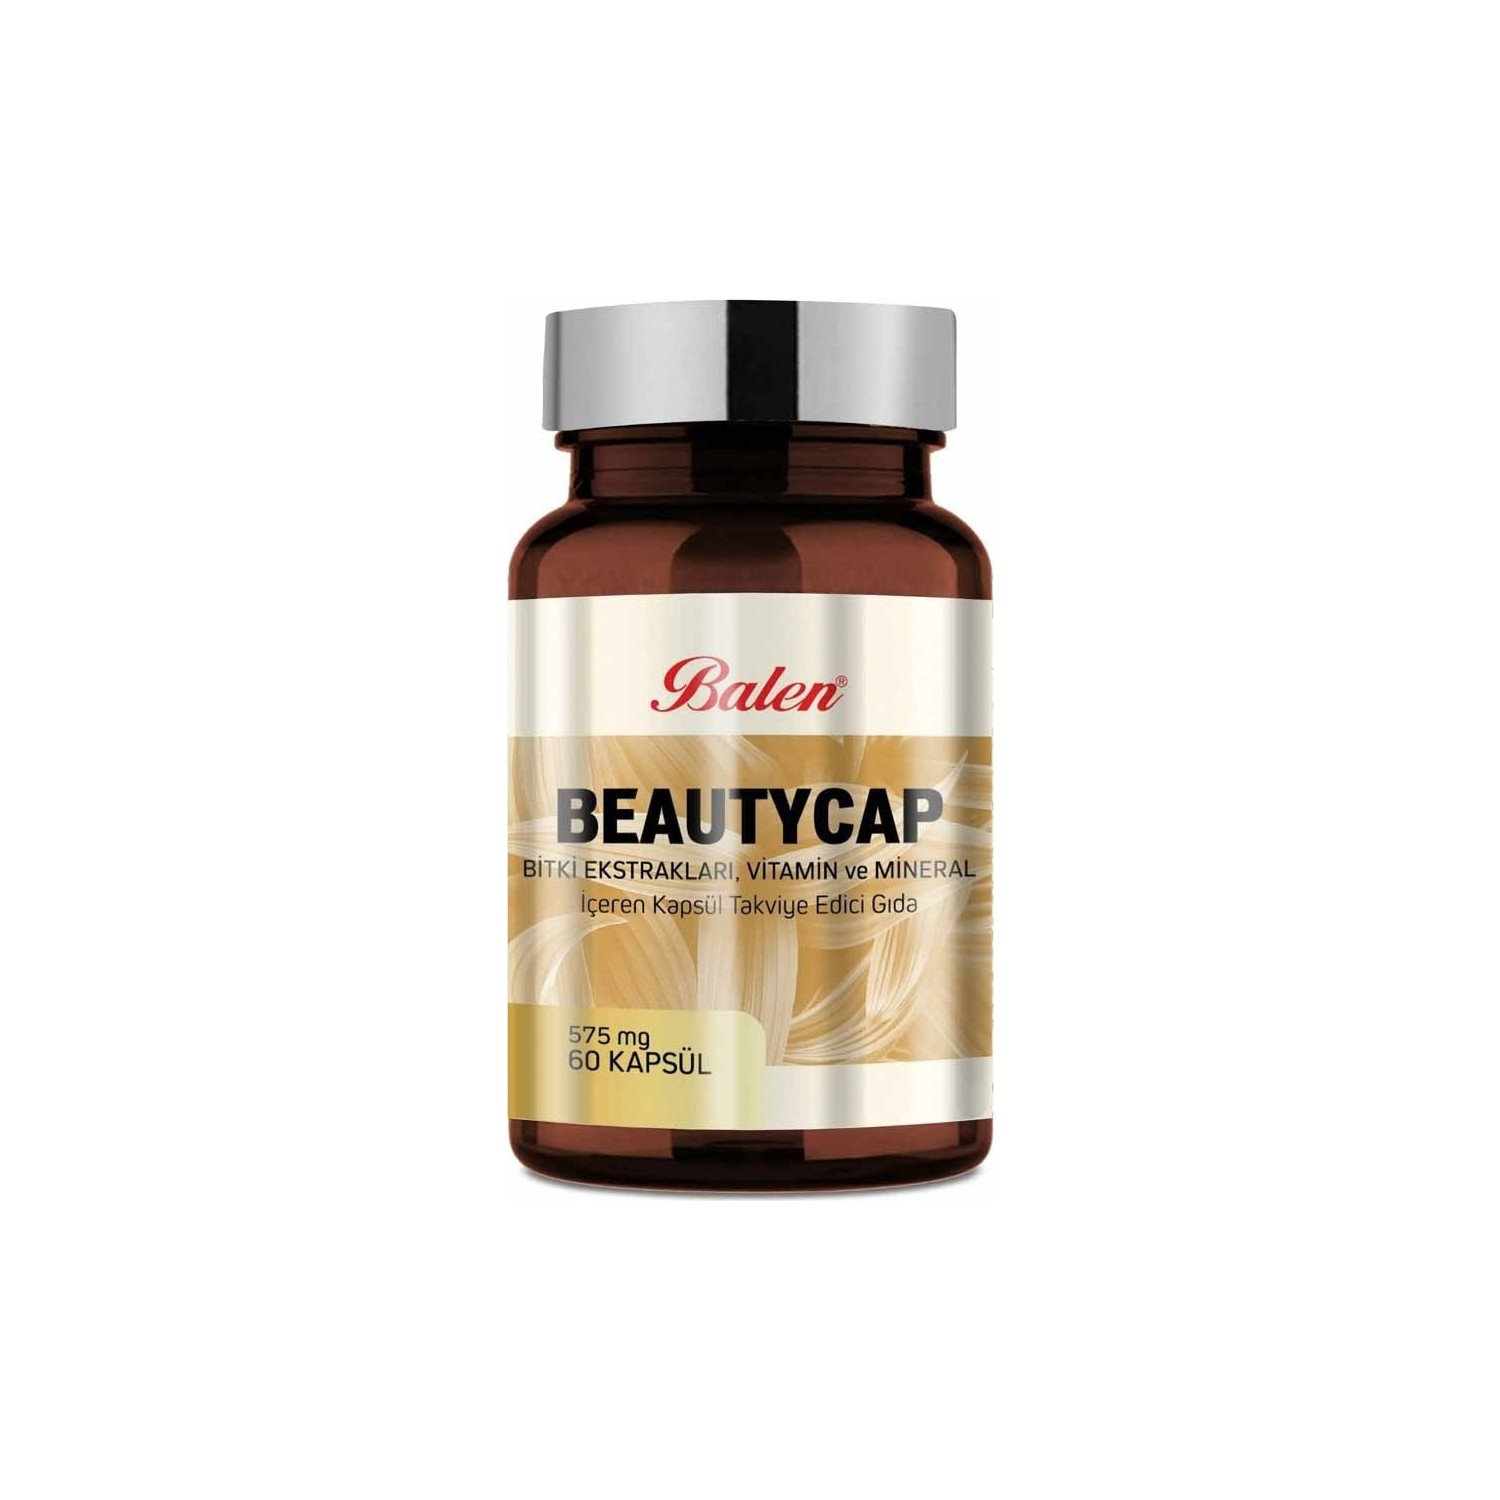 Пищевая добавка Balen Beautycap 575 мг, 2 упаковки по 60 капсул